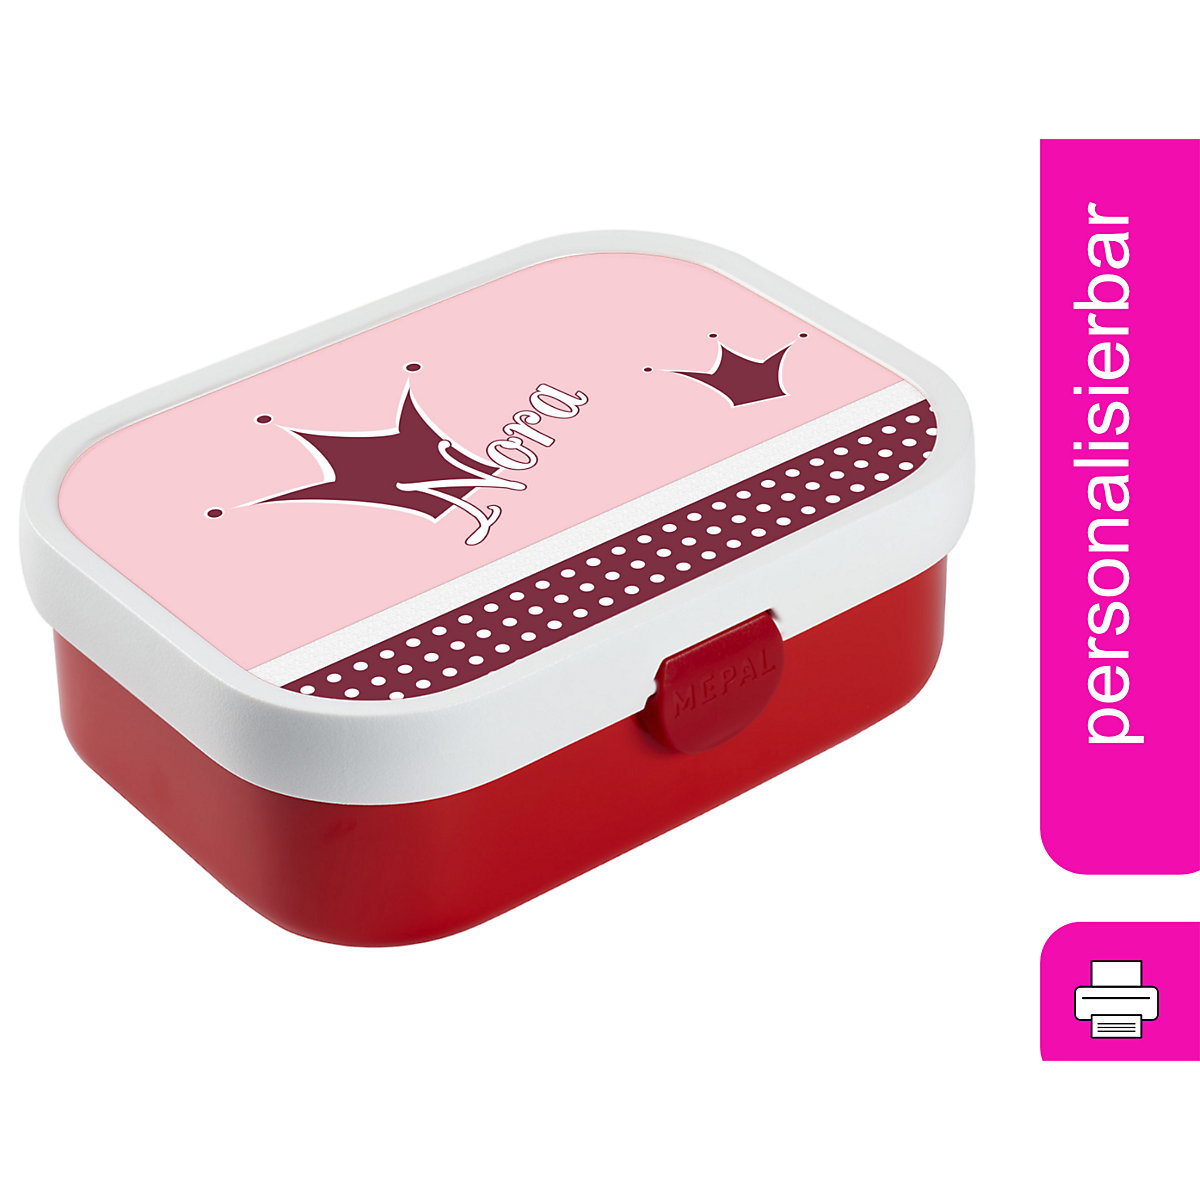 CreaDesign Brotdose Mepal Kinder mit Fächern mit Name personalisiert Prinz / Prinzessin rosa